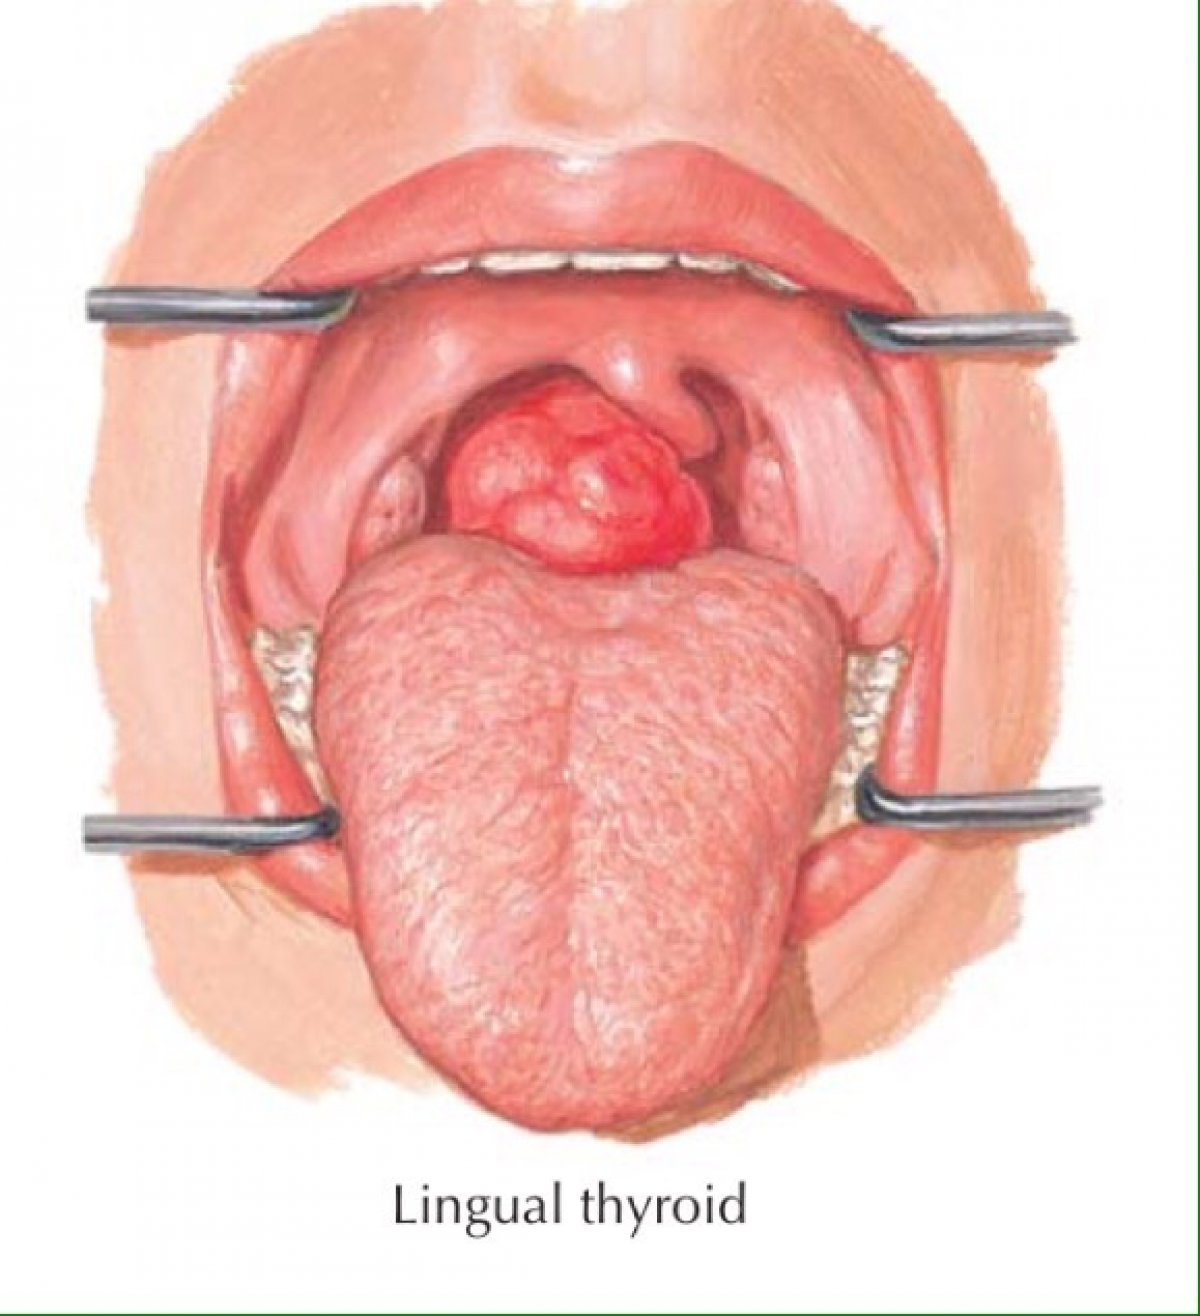 Щитовидная железа может располагаться не типично на шее, а , например, на языке. Иллюстрация из американского учебника по анатомии. Автор Ф.Неттер. Кто нибудь видел такое в жизни у пациентов?